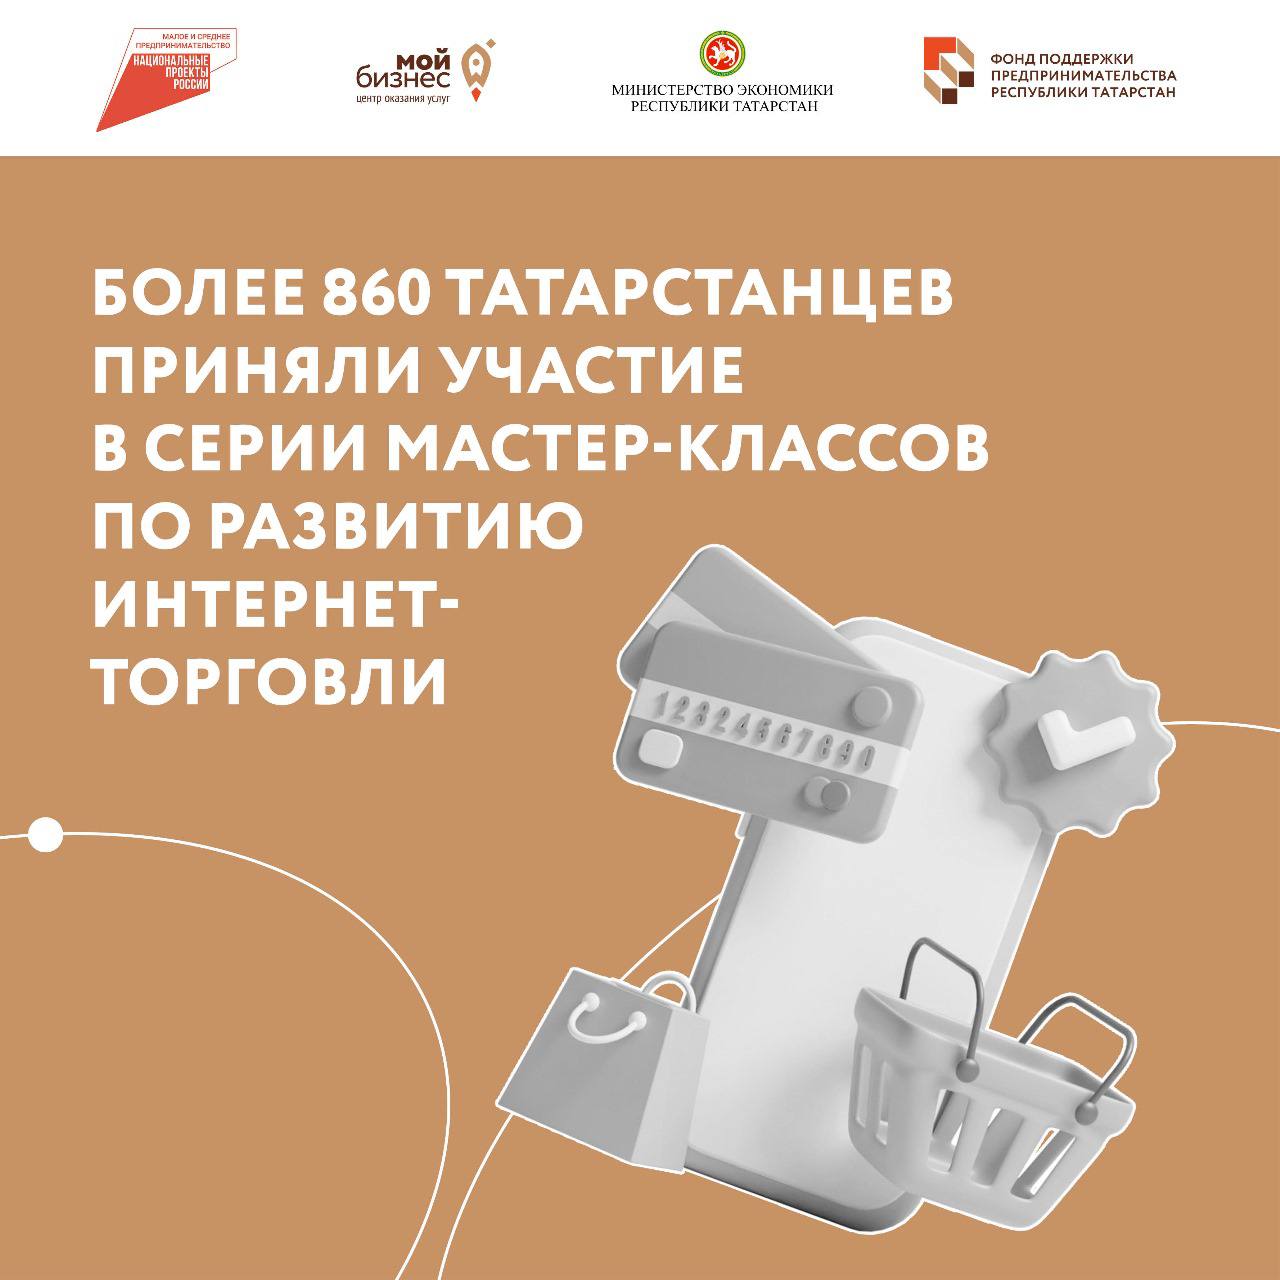 Более 860 татарстанцев приняли участие в серии бесплатных мастер-классов по развитию интернет-торговли «Формула успеха в eCommerce».